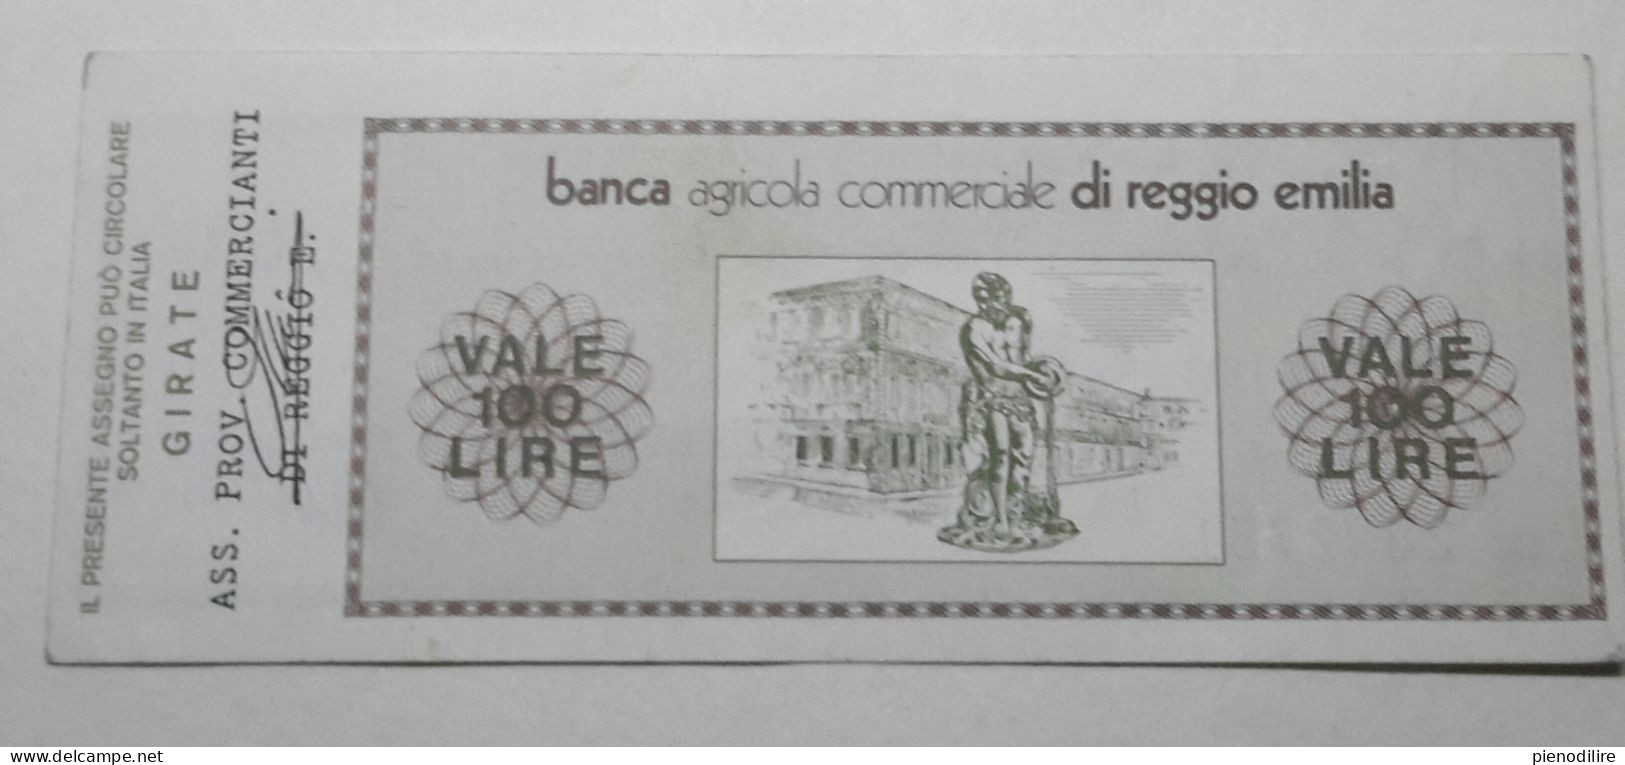 100 LIRE 30.9.1976 BANCA AGRICOLA COMMERCIALE REGGIO EMILIA (A.43) - [10] Checks And Mini-checks